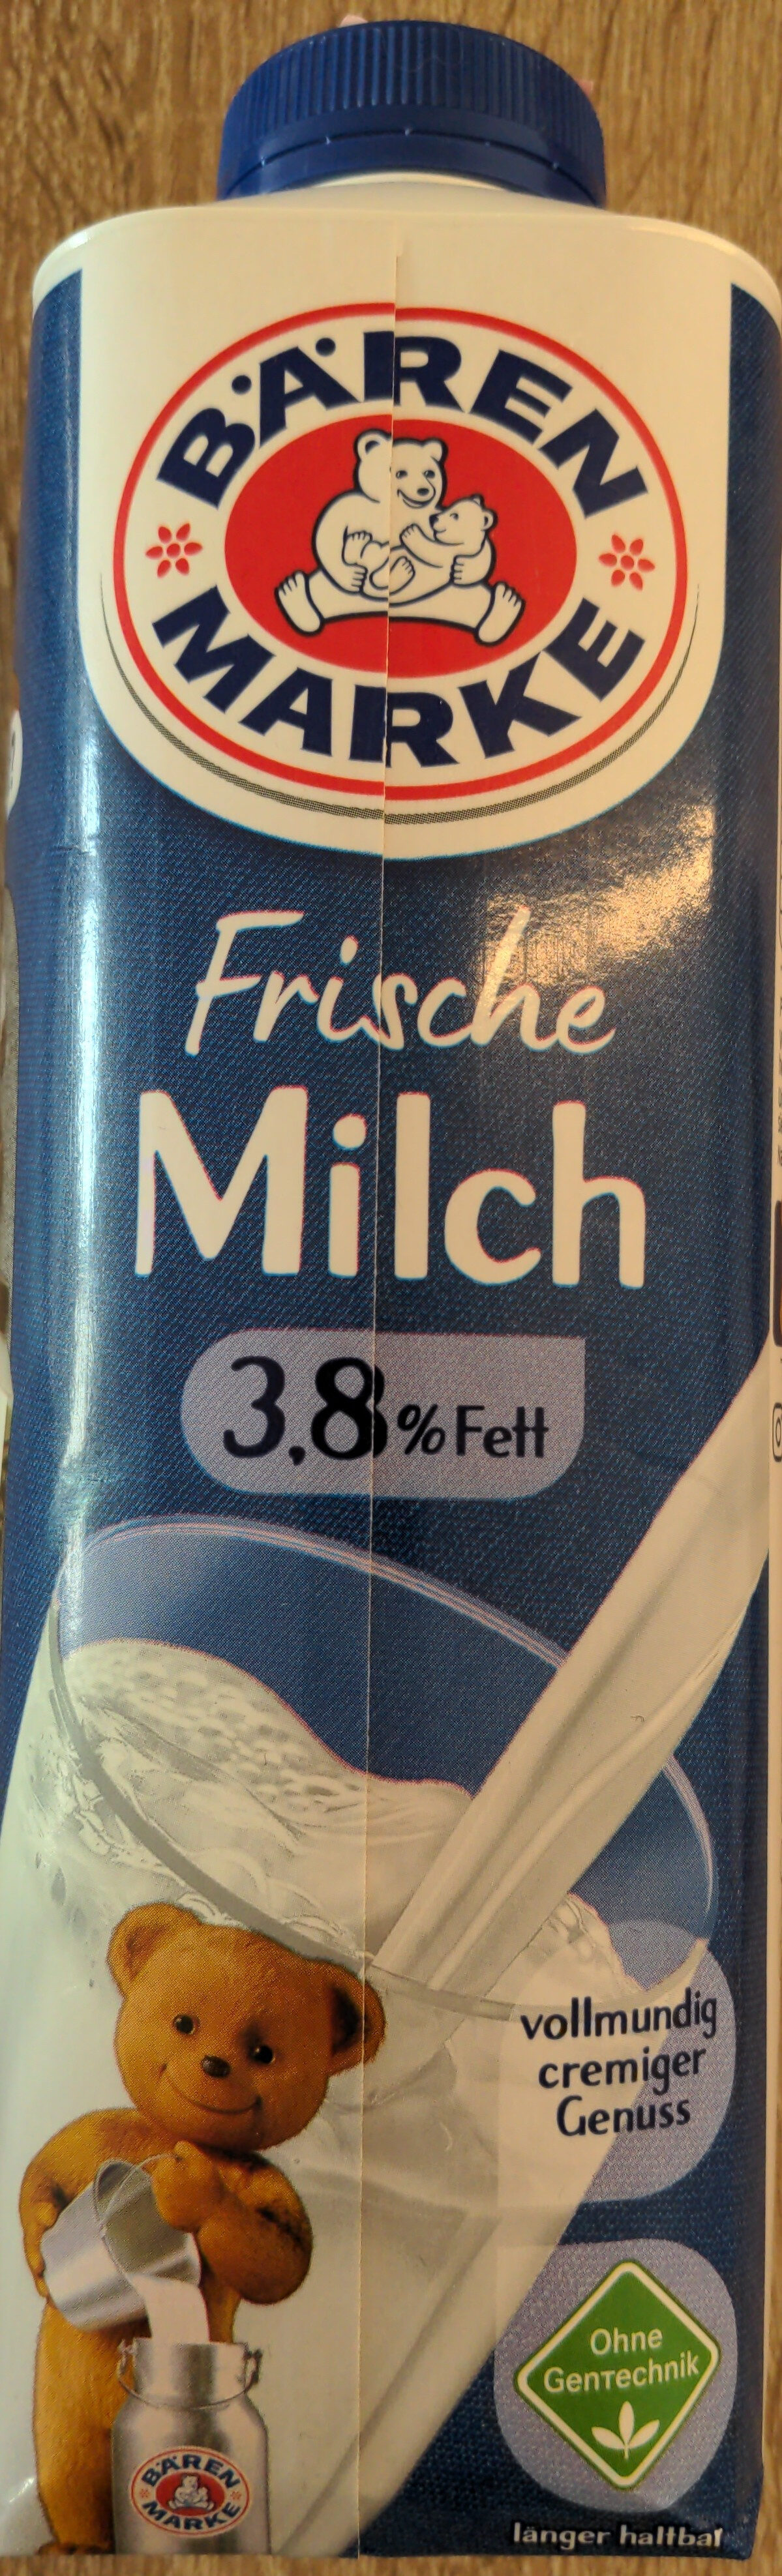 Frische Milch 3,8% Fett - Produkt